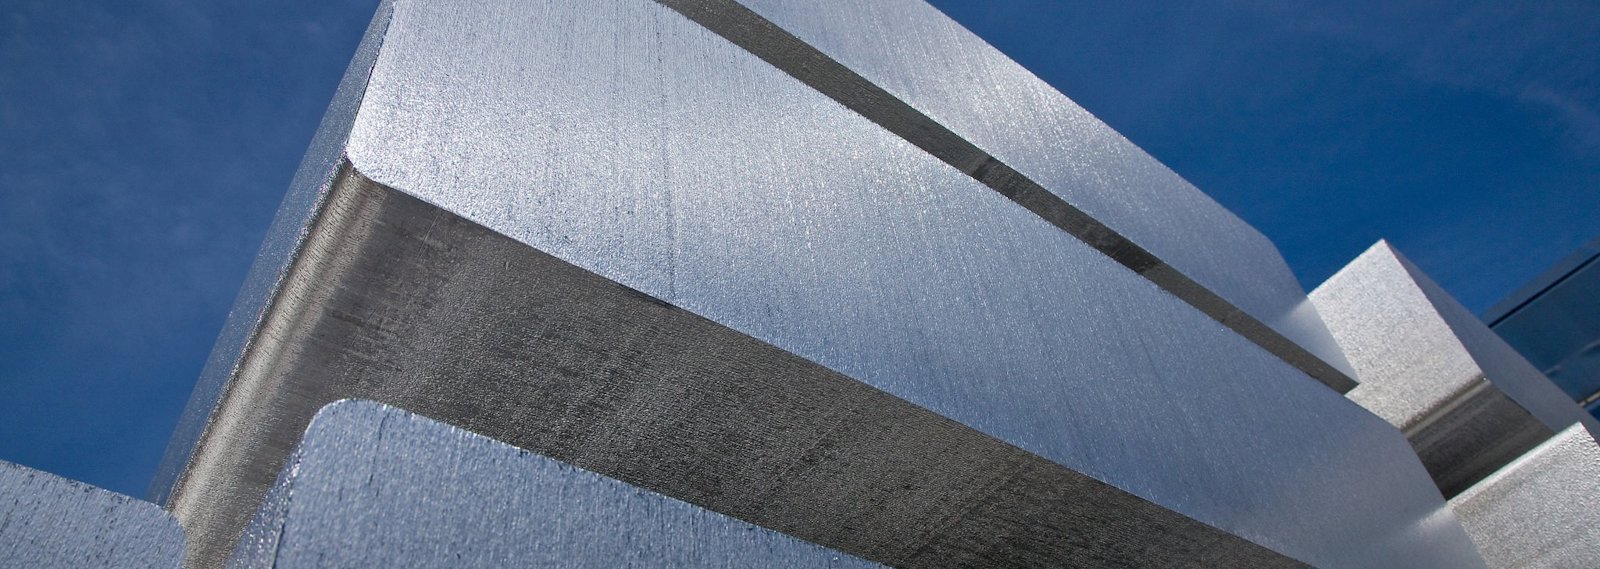 stack of large aluminium sheet ingots